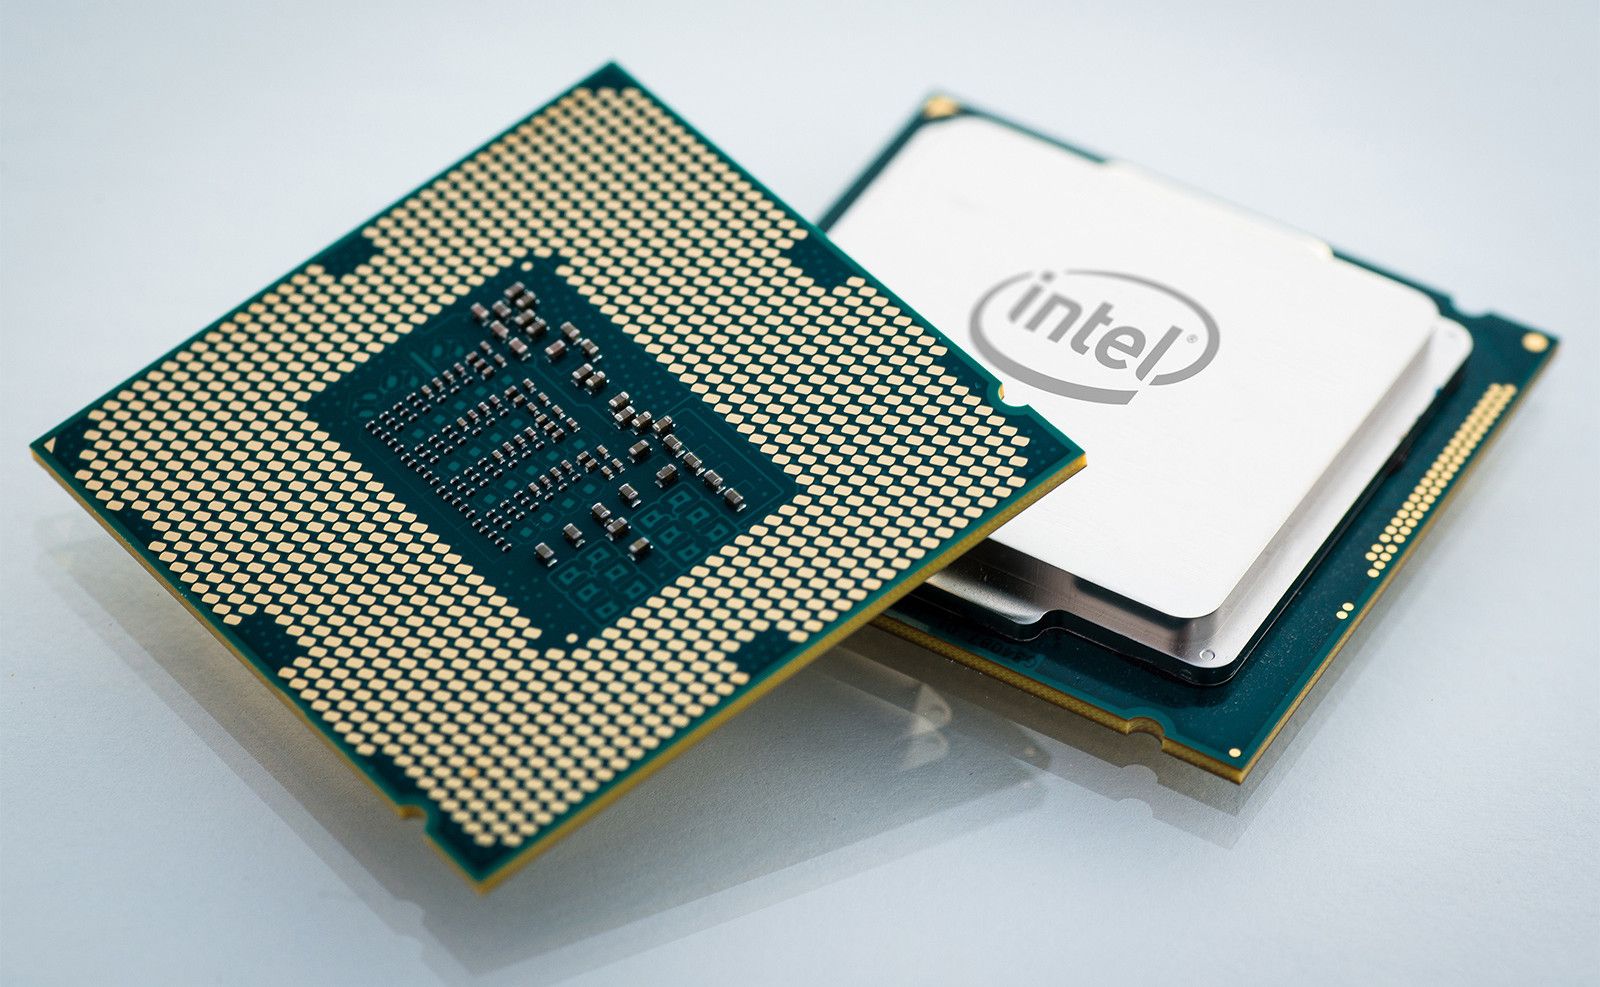 Procesor Intel Raptor Lake wykryty w pierwszym wycieku z testów porównawczych